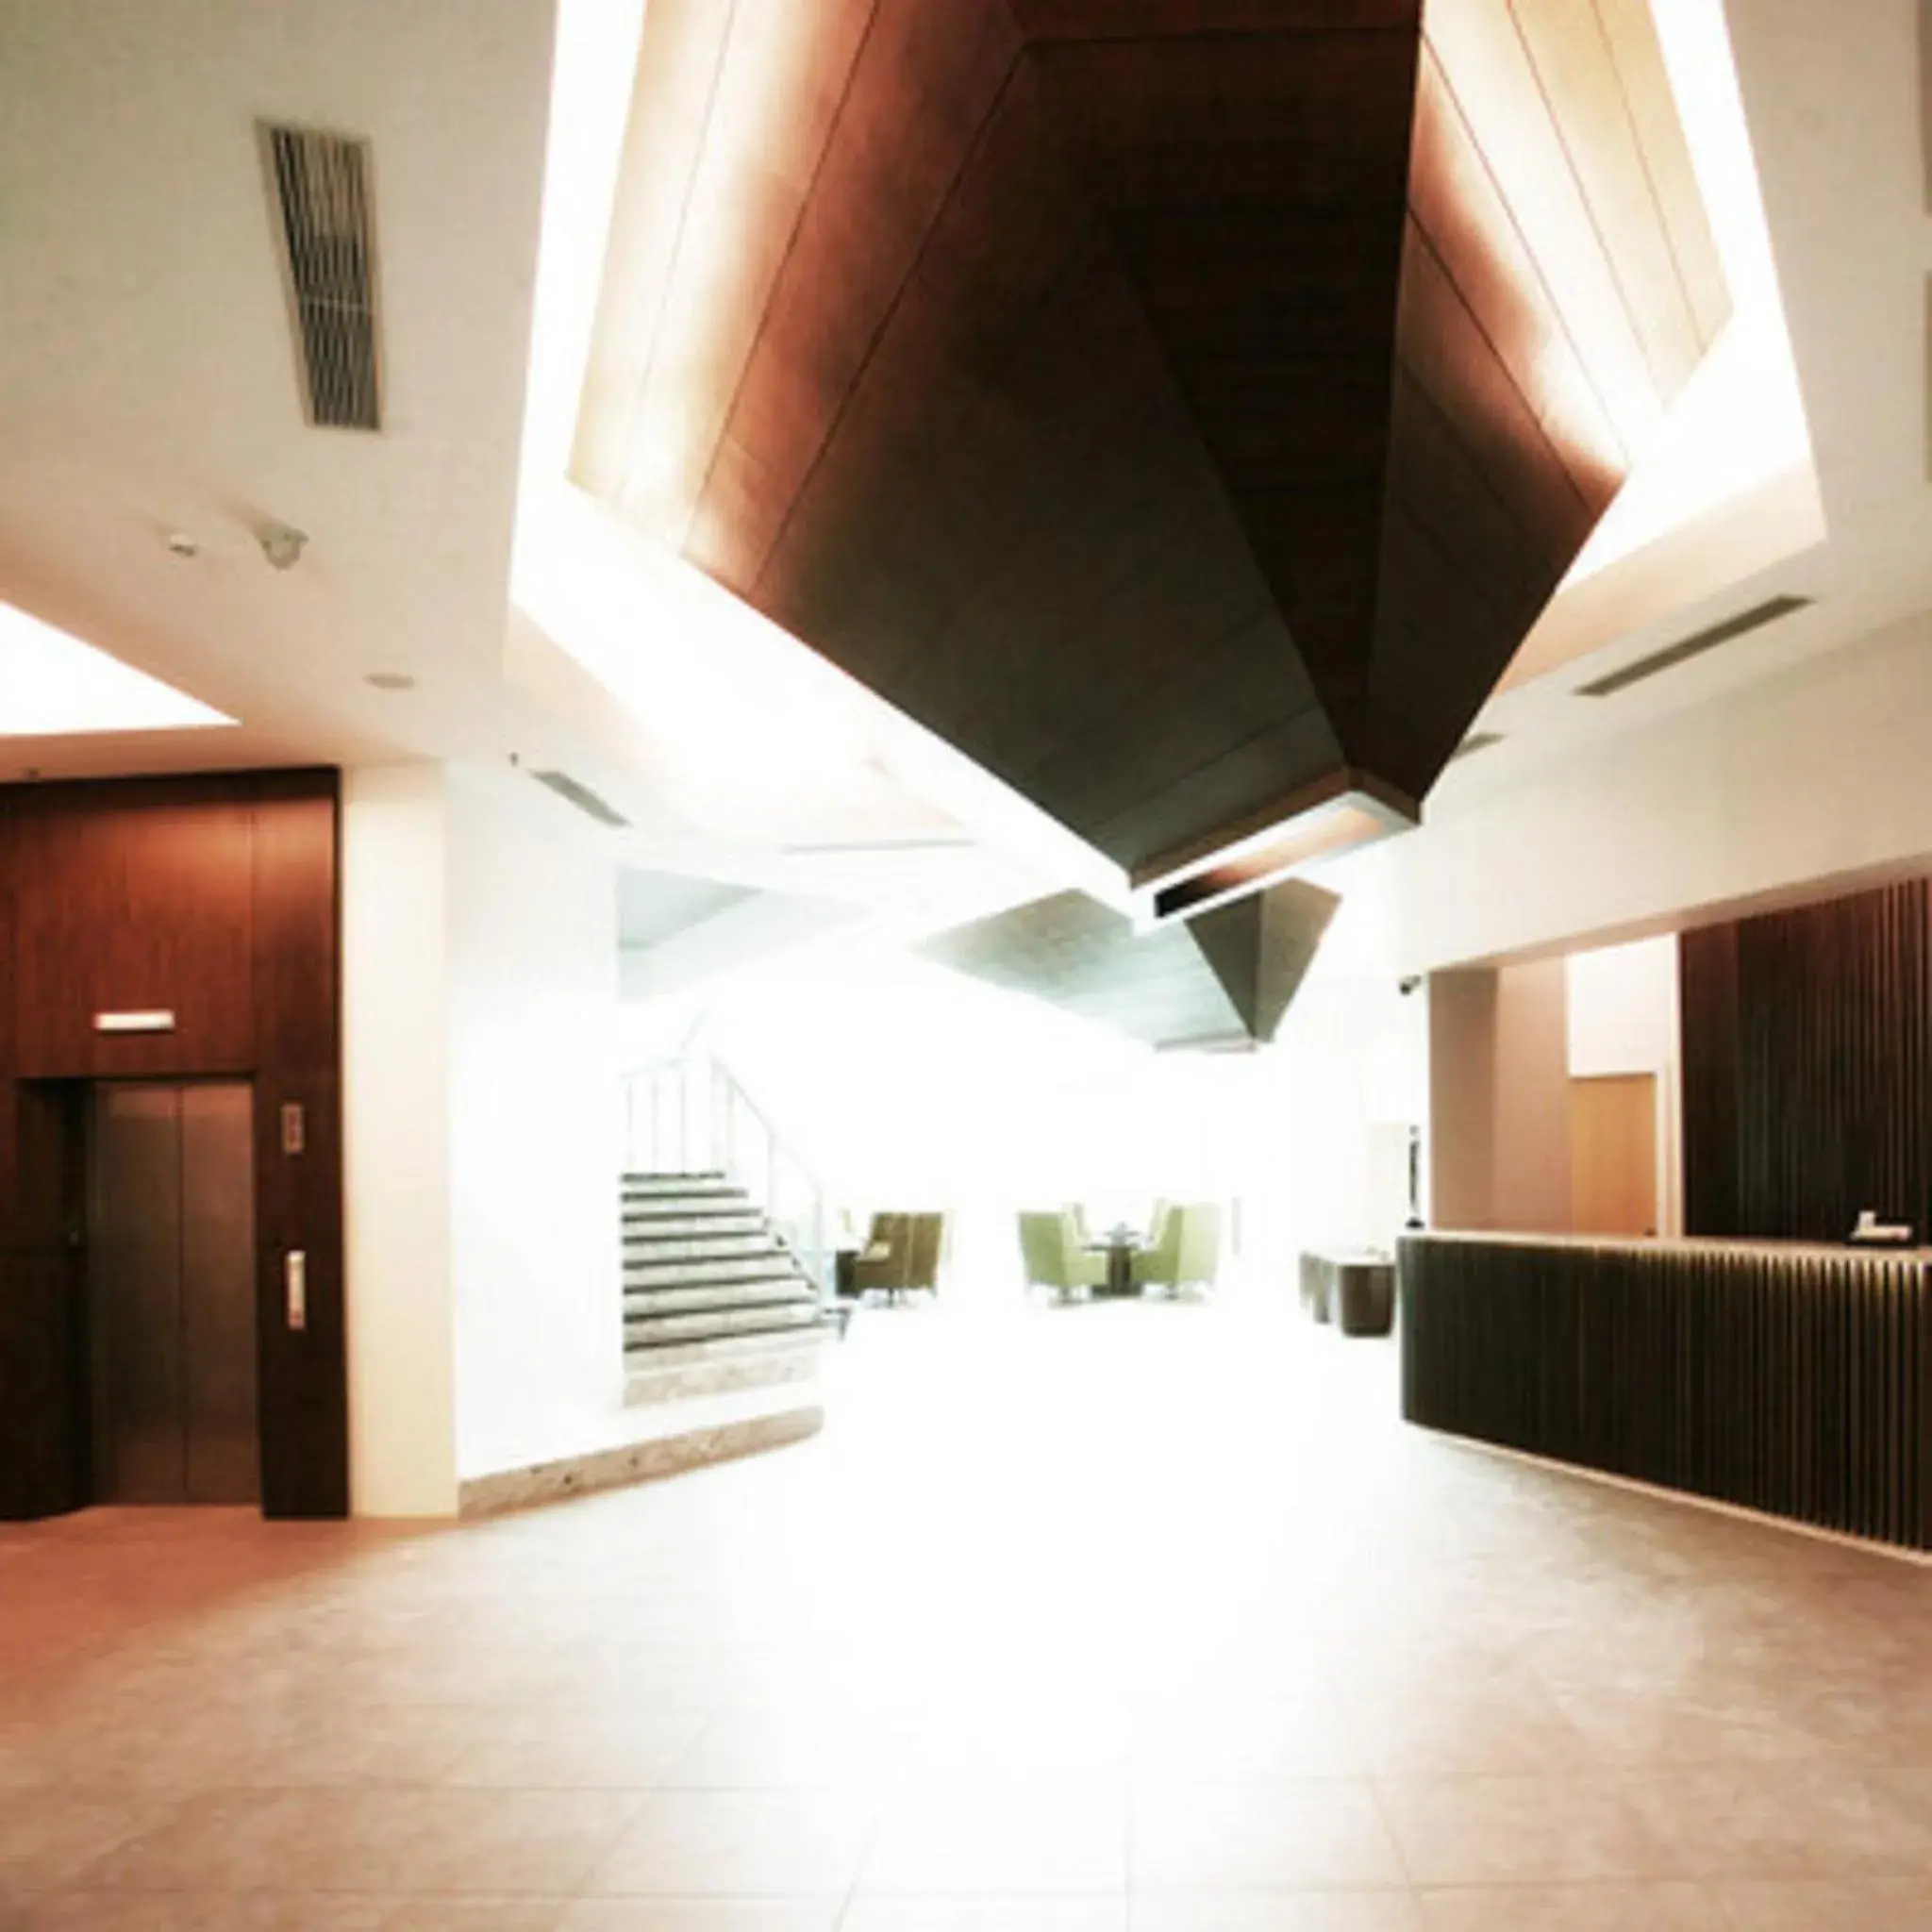 Lobby or reception in Wyne Hotel